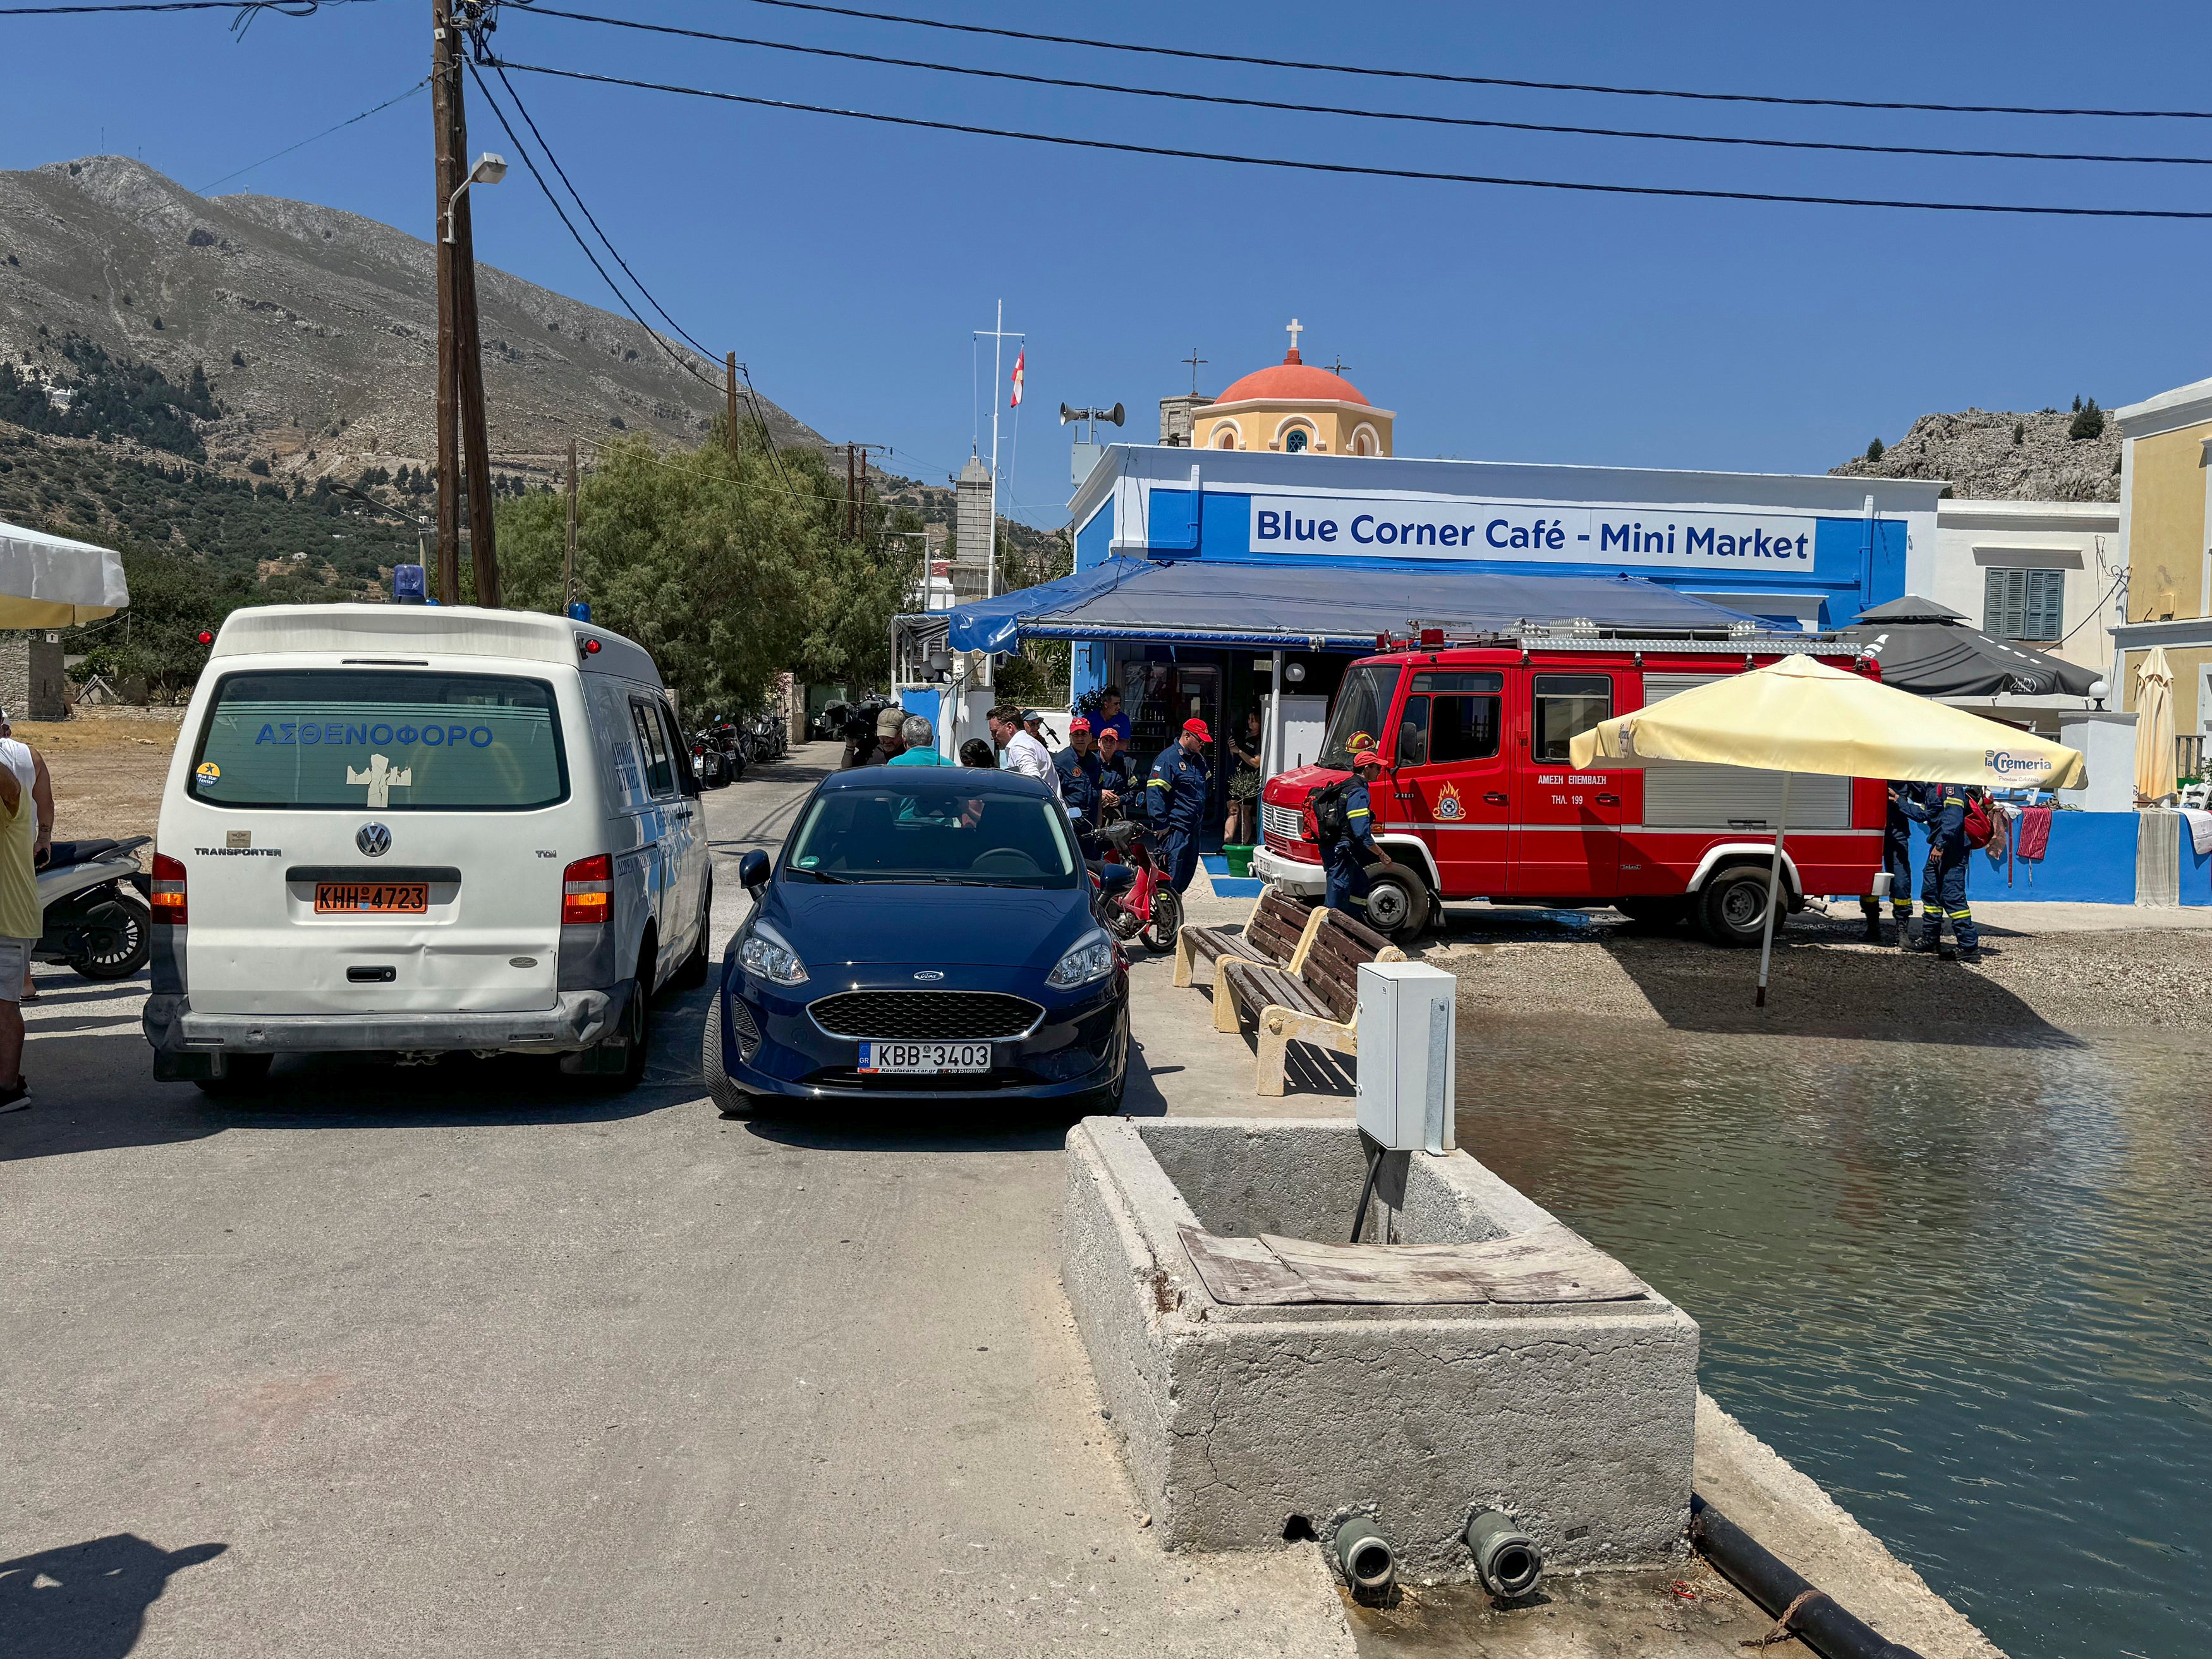 Blick auf einen Krankenwagen und ein Feuerwehrauto am Meeresufer auf der Insel Symi, Griechenland